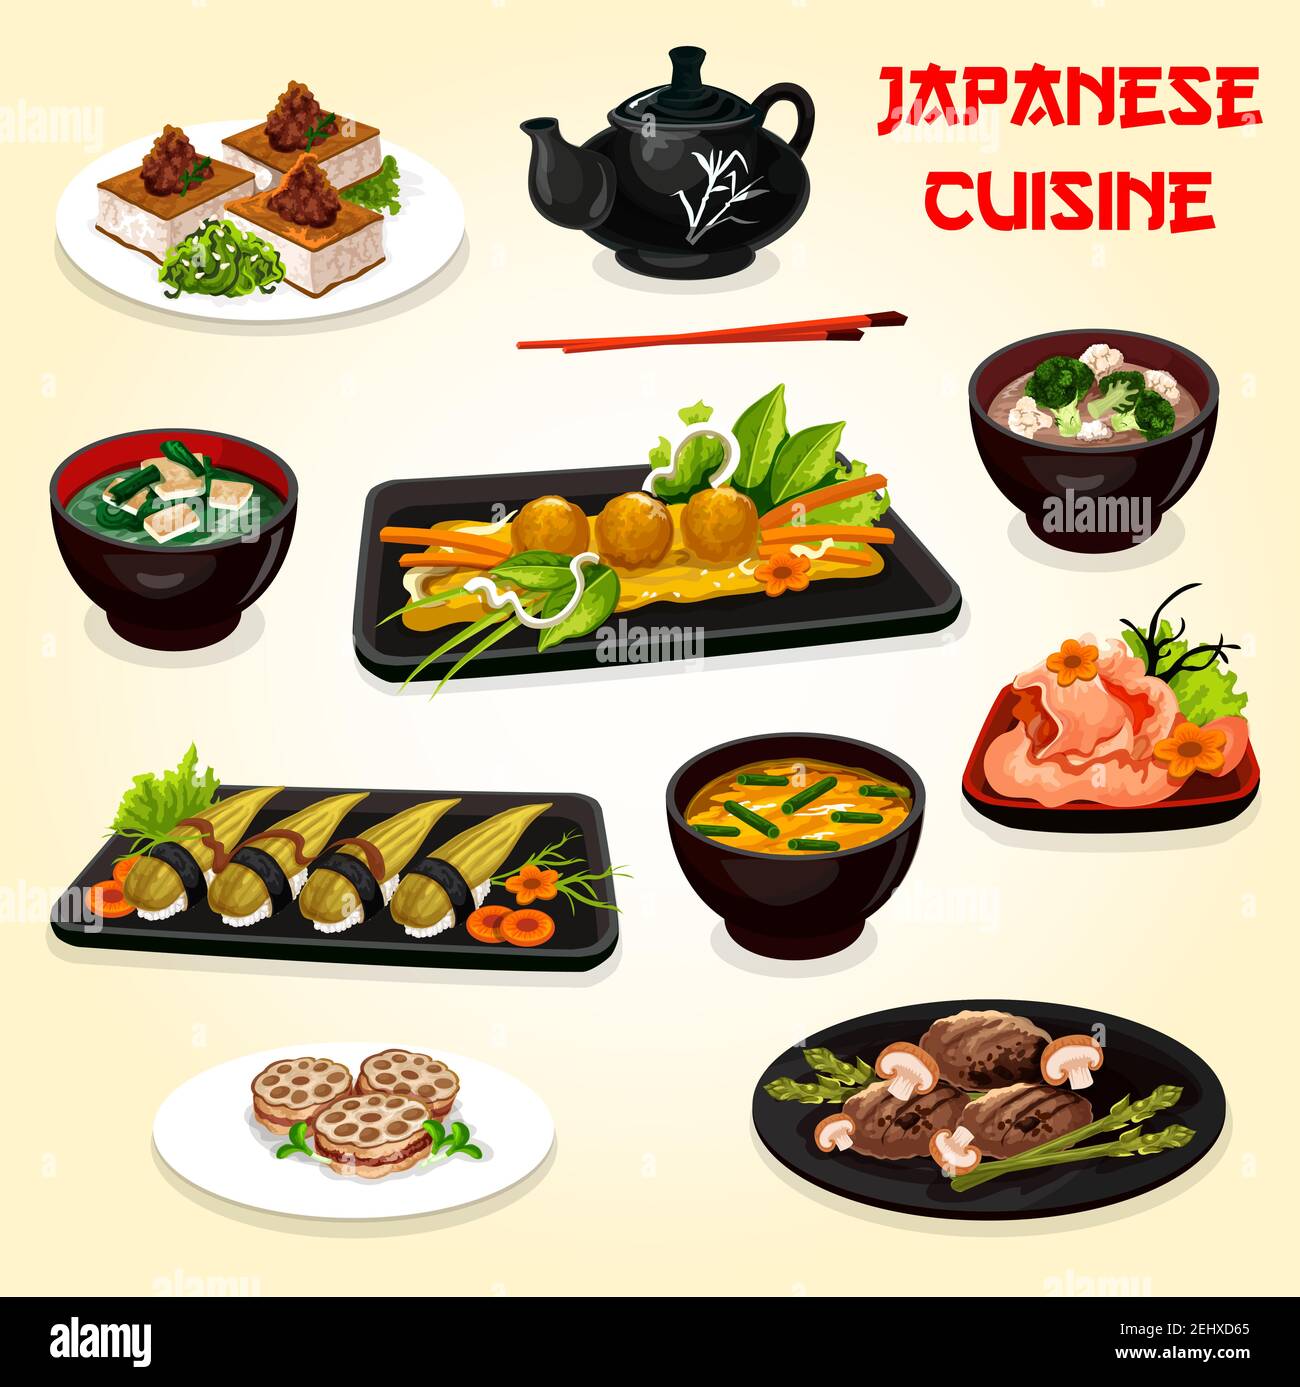 Plats vectoriels de cuisine japonaise et asiatique. Sushis nigiri, boulettes de porc et de poulpe avec légumes cuits au four, racine de lotus et viande, tofu frit et soupes miso wi Illustration de Vecteur